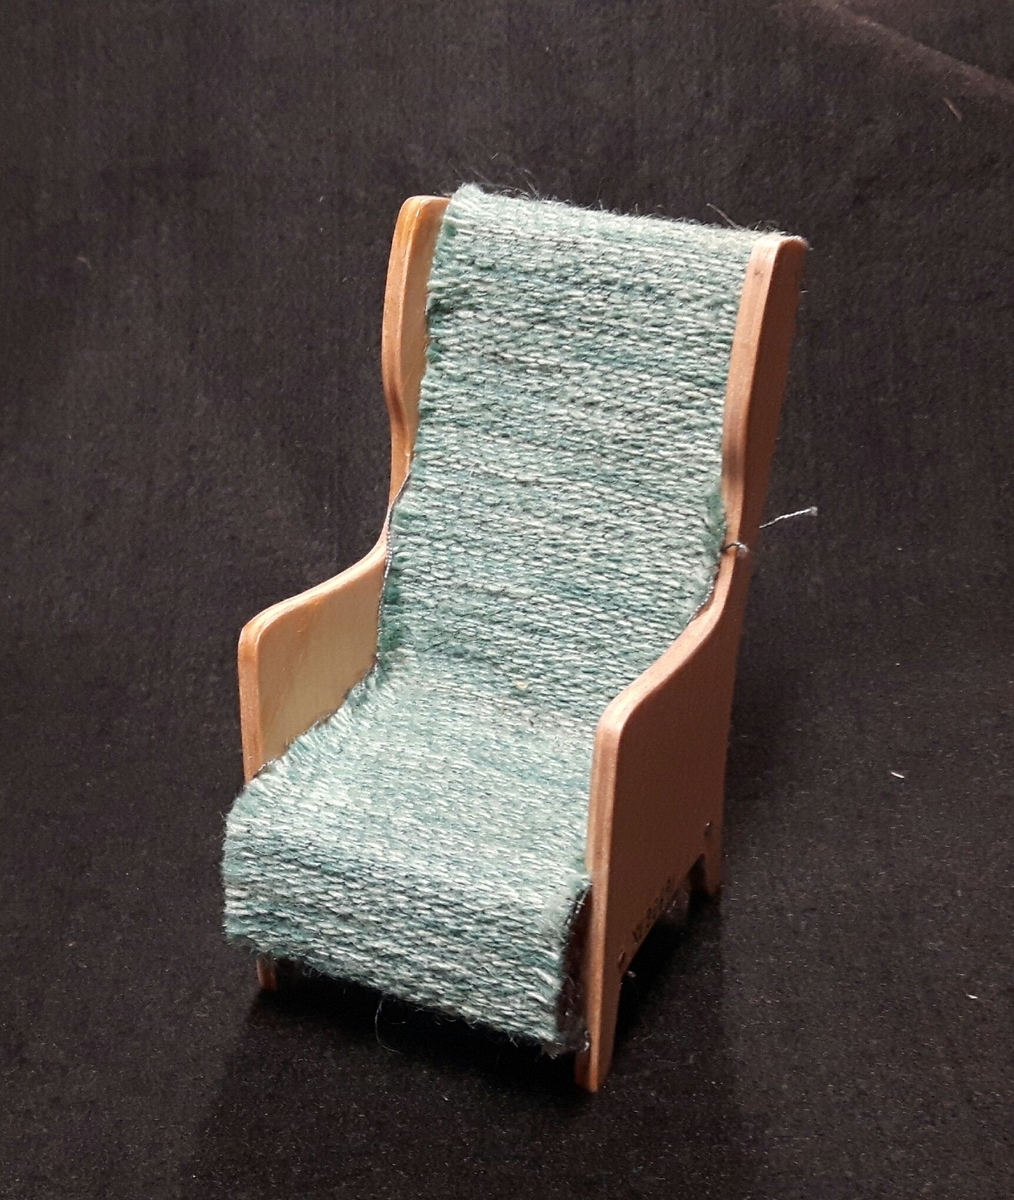 Karmstol med blågrå klädsel.

Ingår i en samling möbelmodeller använd vid kurser i heminredning anordnade av Älvsborgs läns norra slöjdförening.